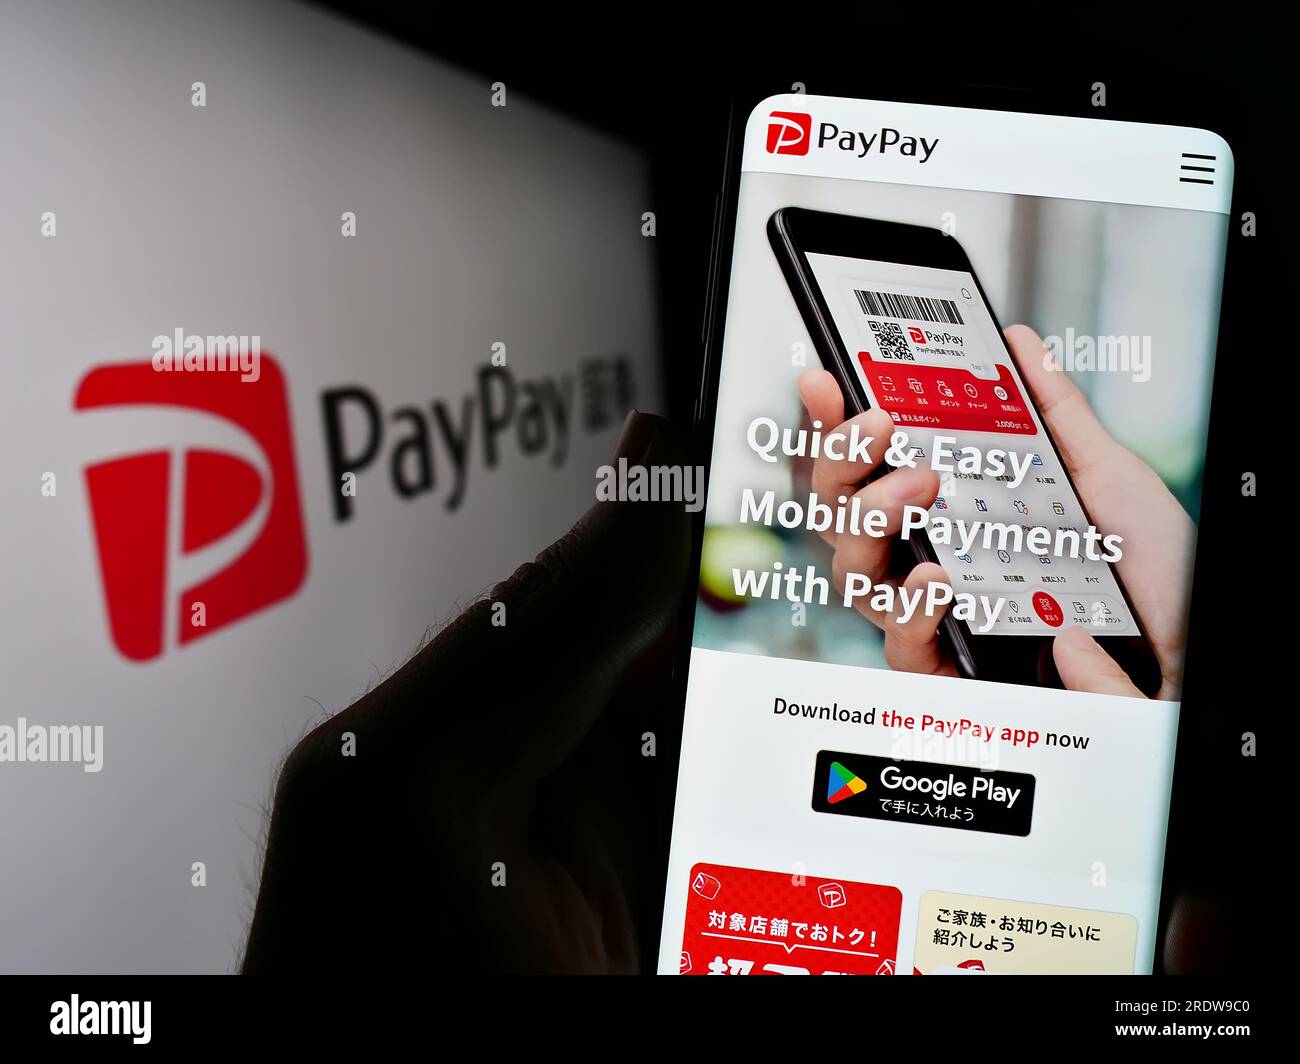 Personne tenant le smartphone avec la page Web de la société de paiement japonaise PayPay Corporation sur l'écran avec logo. Concentrez-vous sur le centre de l'écran du téléphone. Banque D'Images